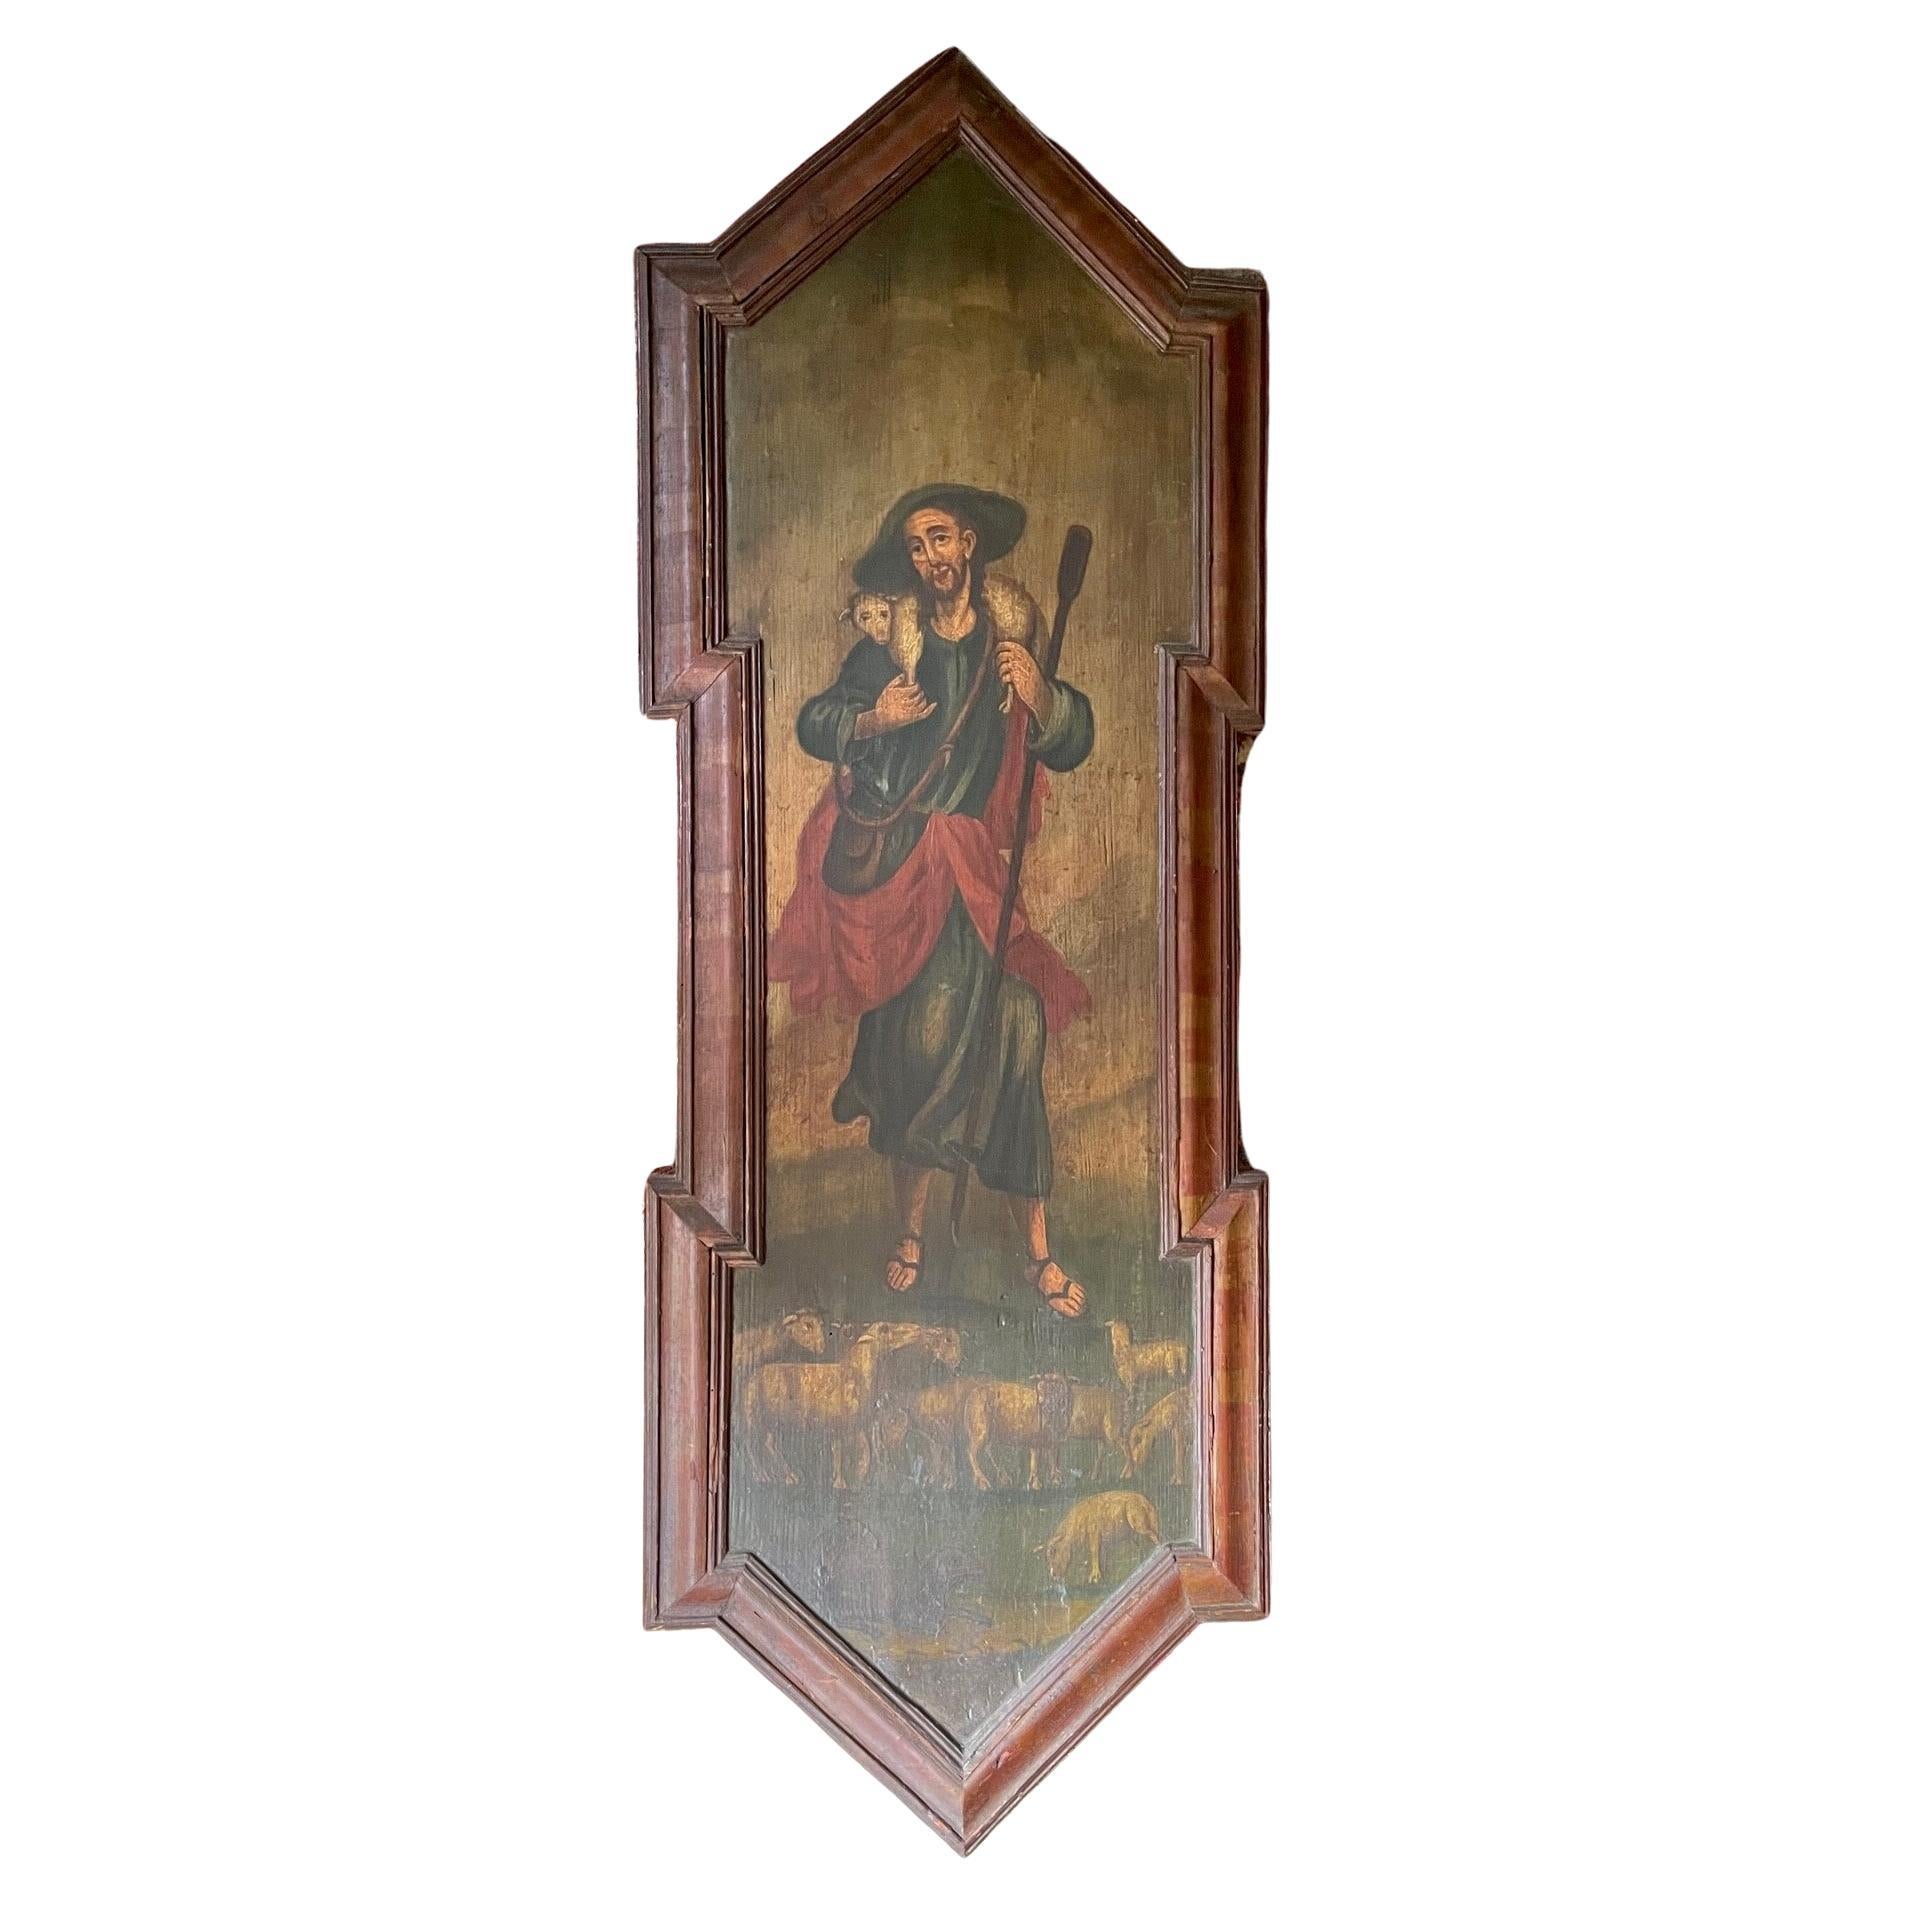 Peinture russe à l'Icone sur Wood du 19ème siècle, le Bon Pasteur